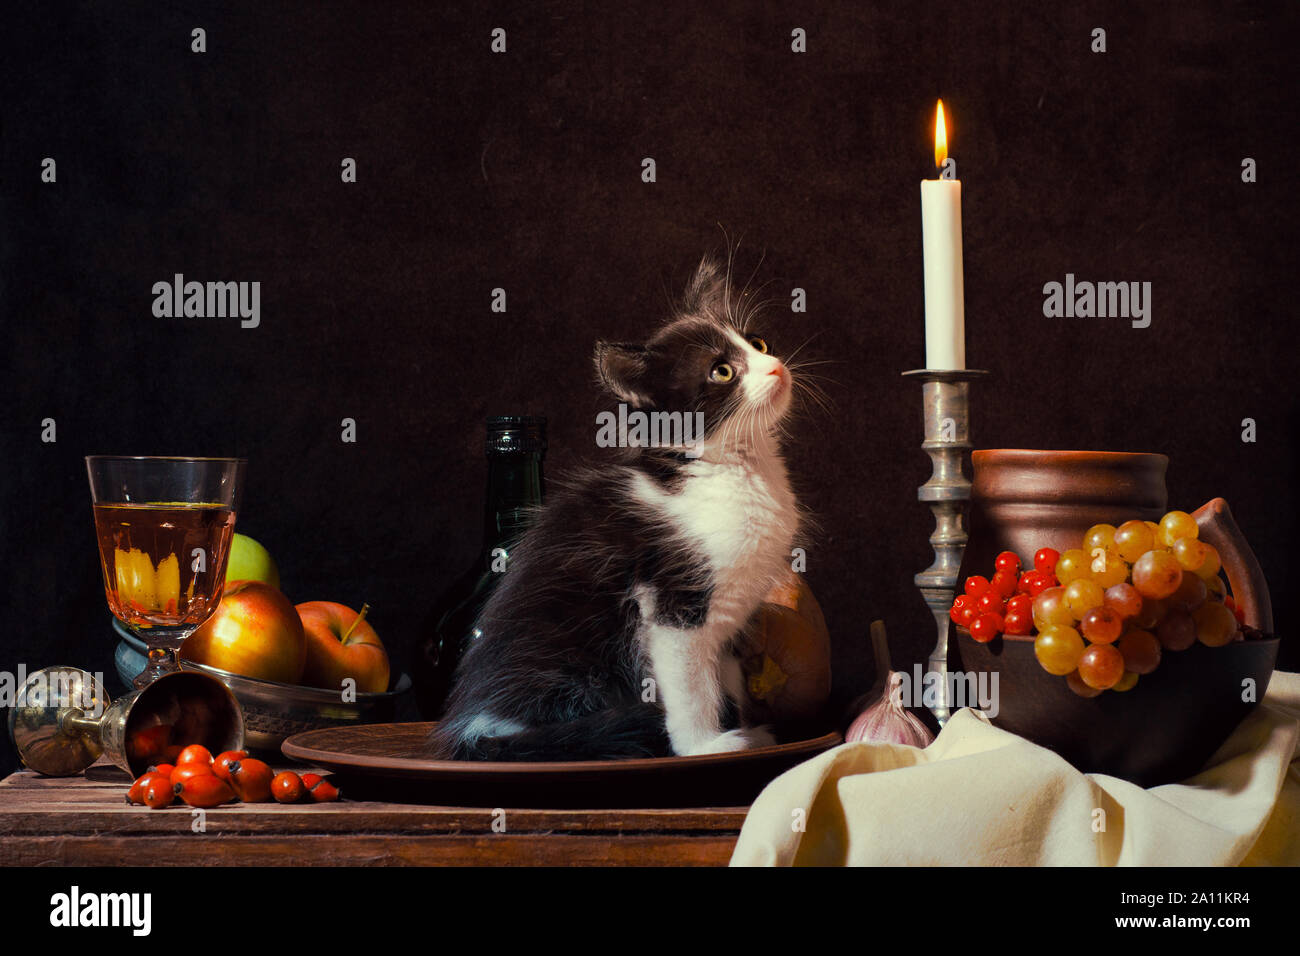 Still Life de chaton noir et blanc assis sur une plaque d'argile et en regardant une bougie allumée sur fond sombre Banque D'Images